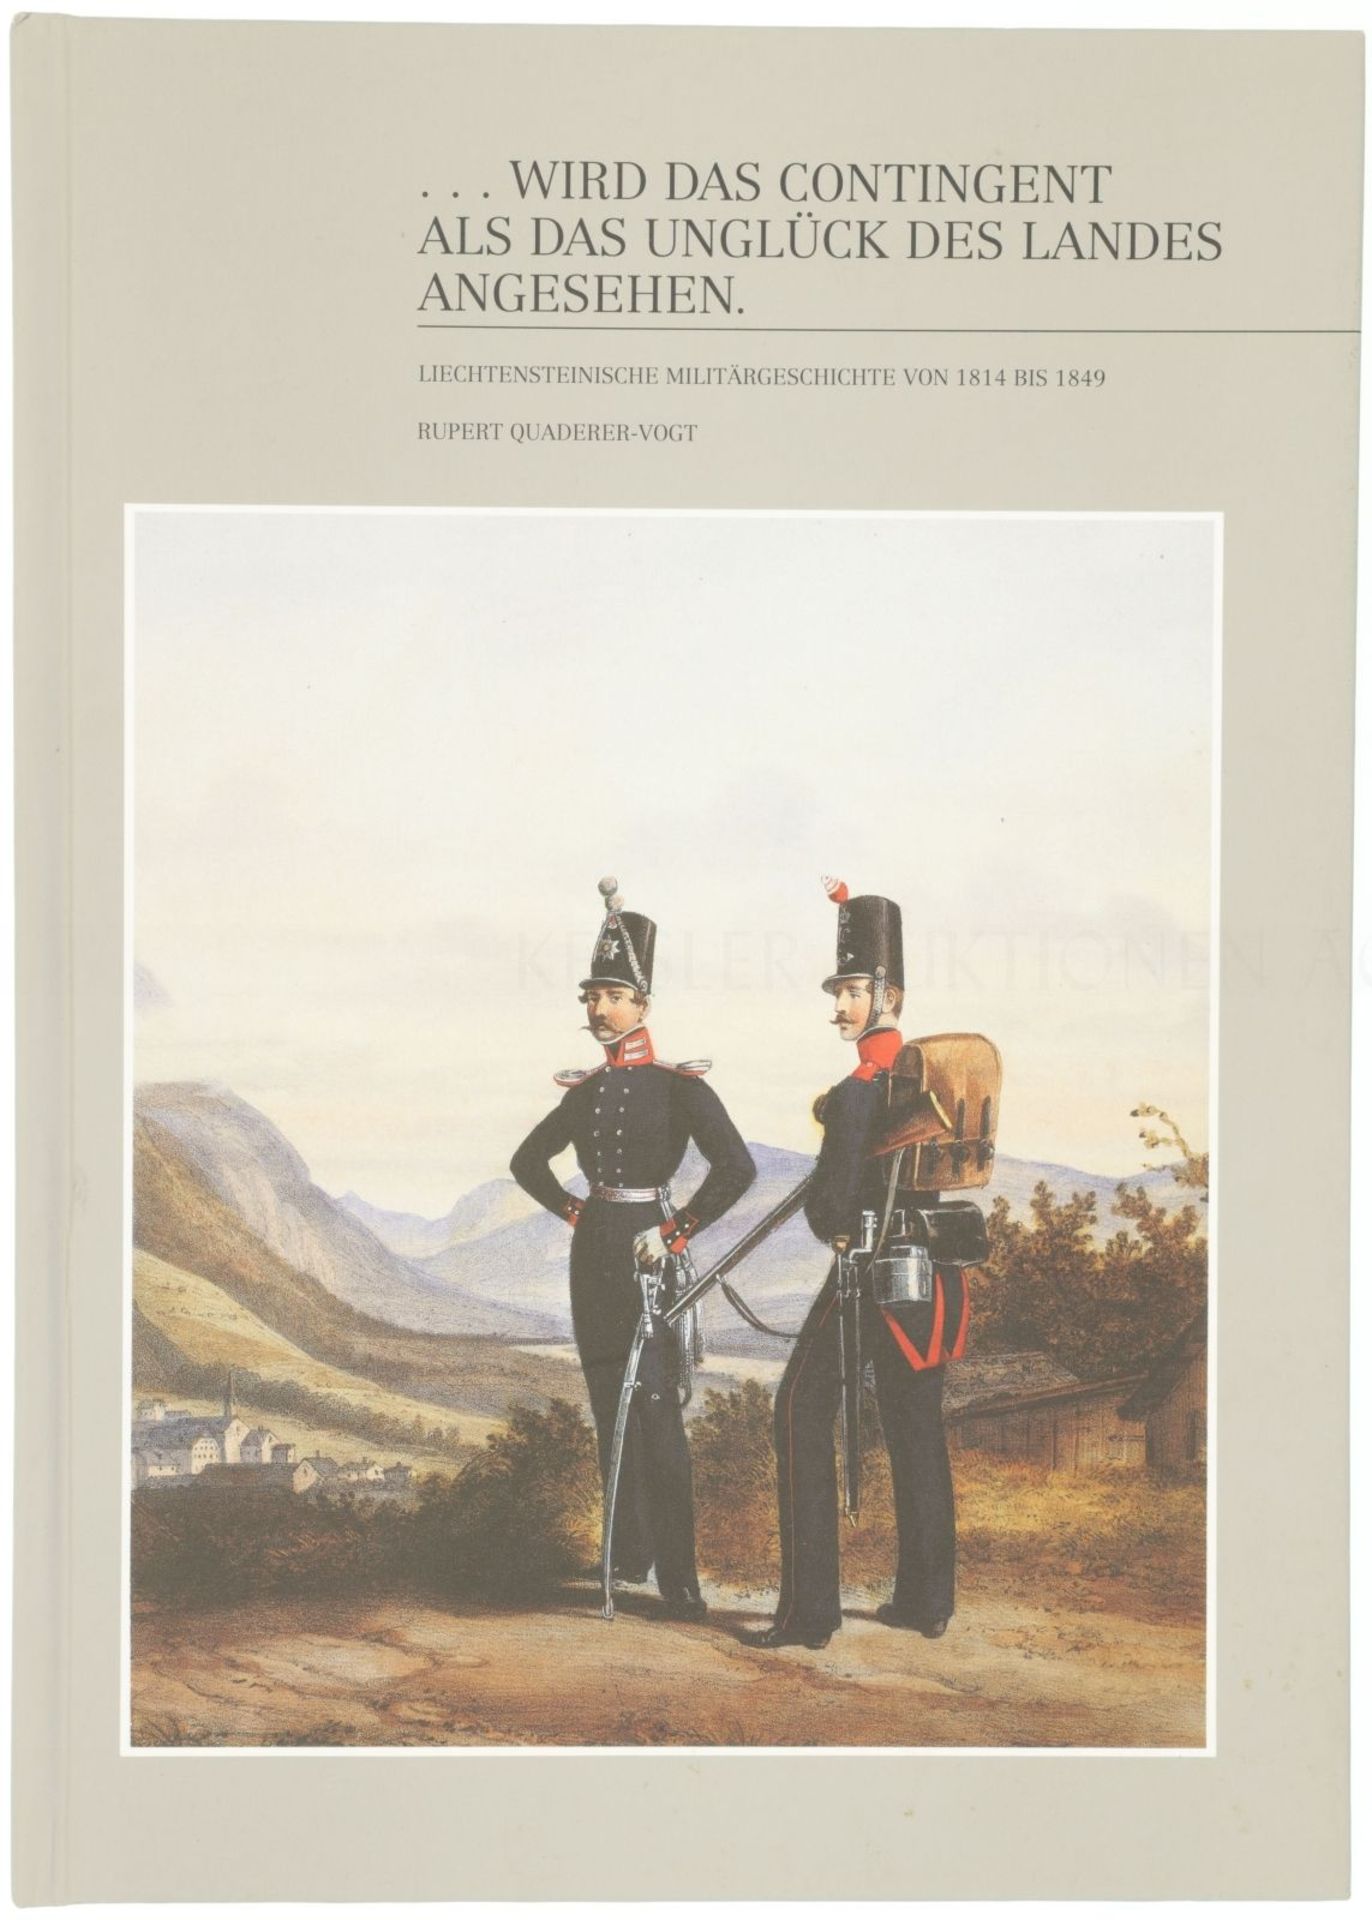 Liechtensteinische Militärgeschichte 1814-1849 ...wird das Contingent als das Unglück des Landes ang